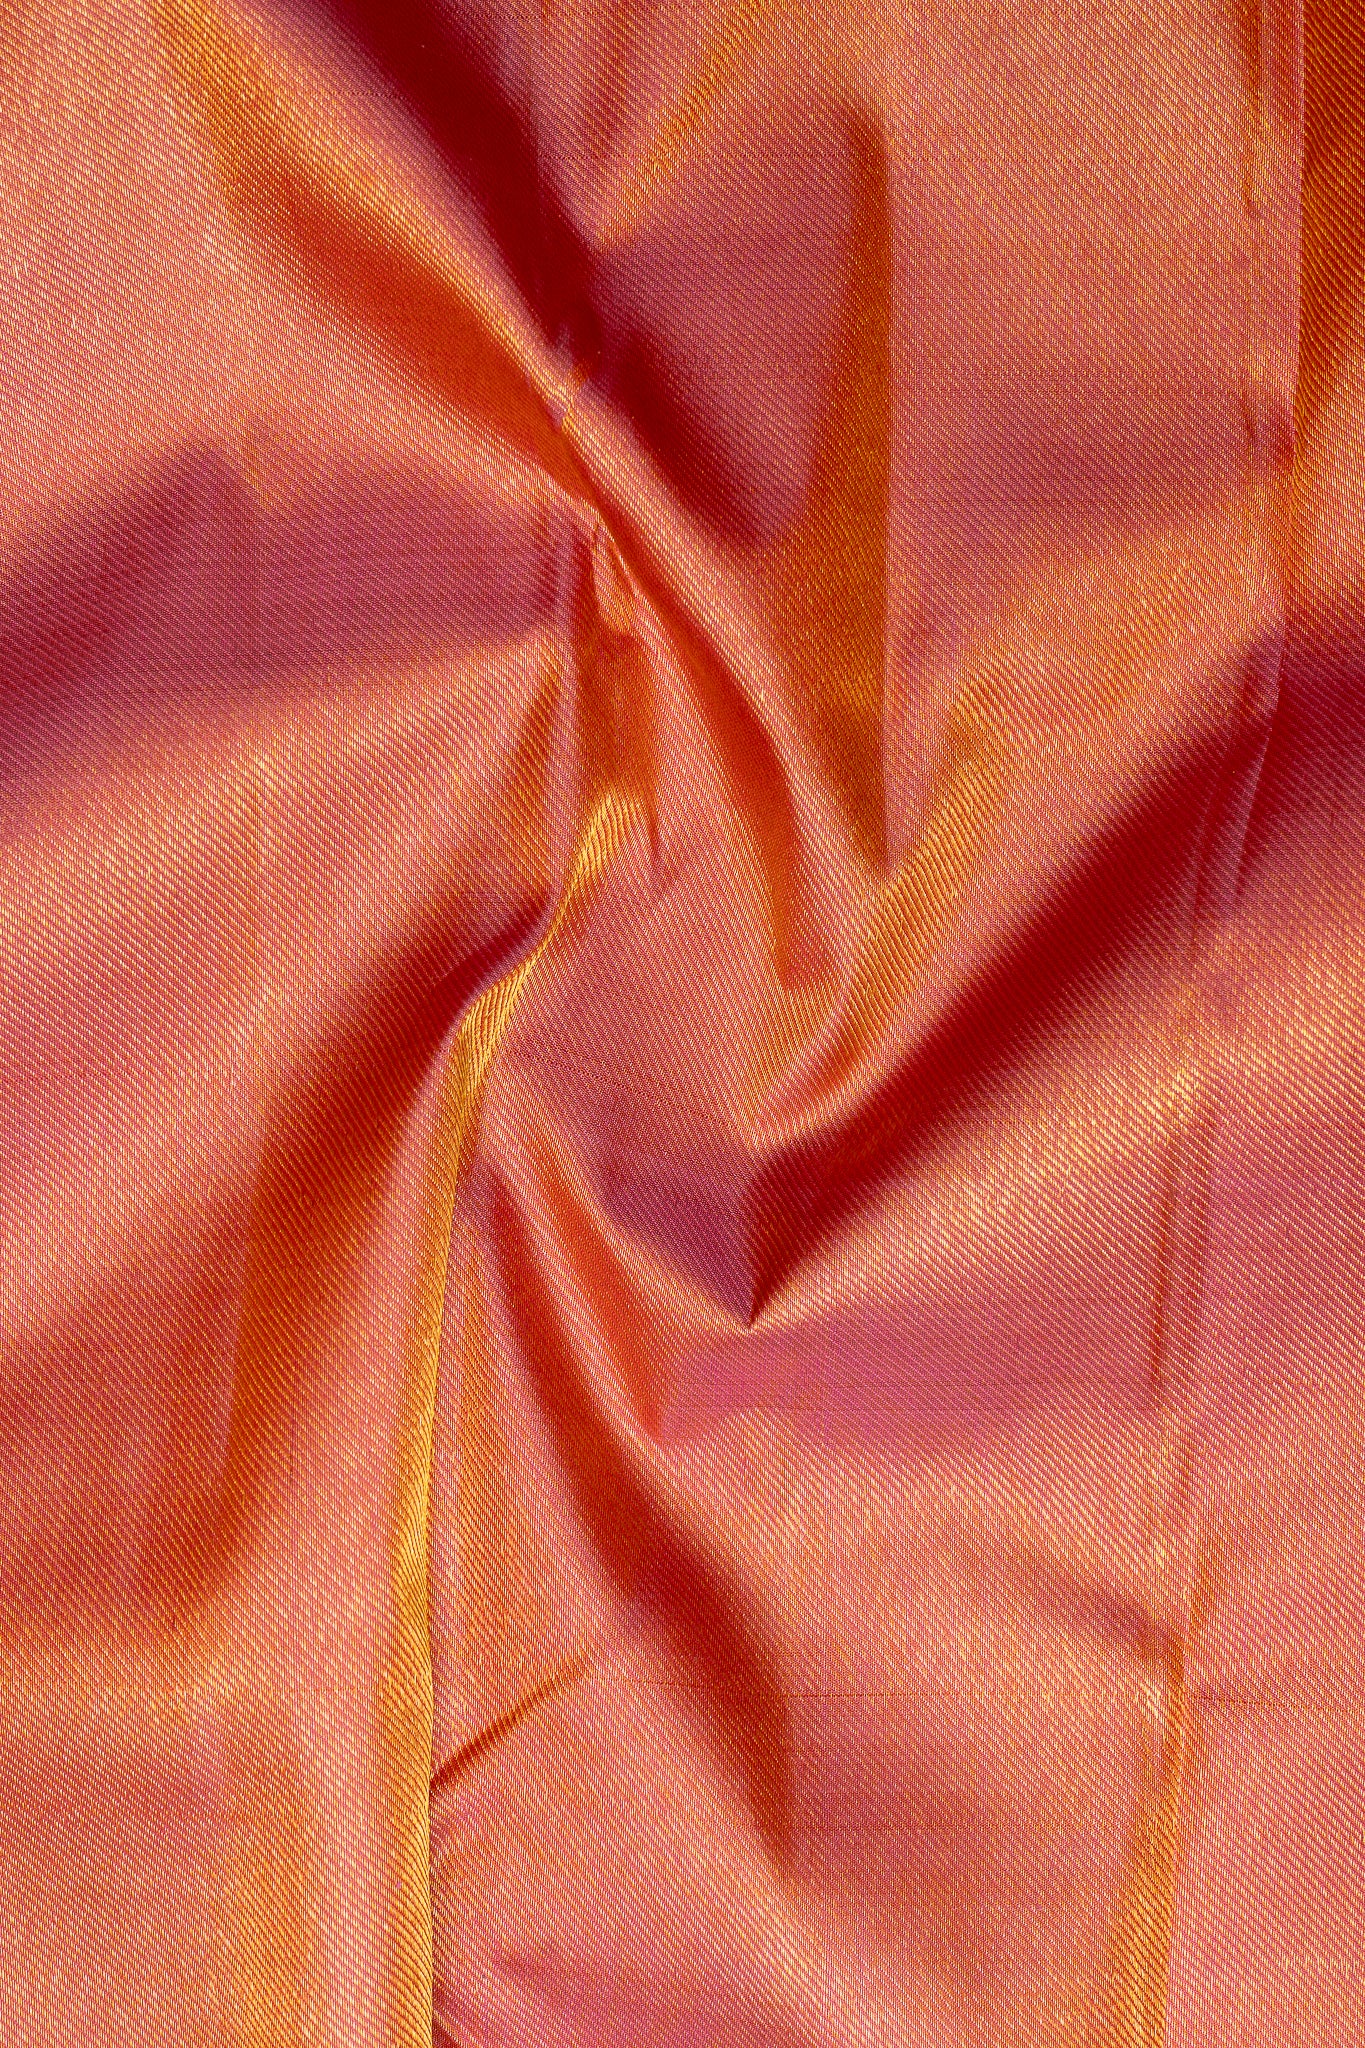 Lotus Pink Brocade Pure Kanchipuram Silk Saree - Clio Silks